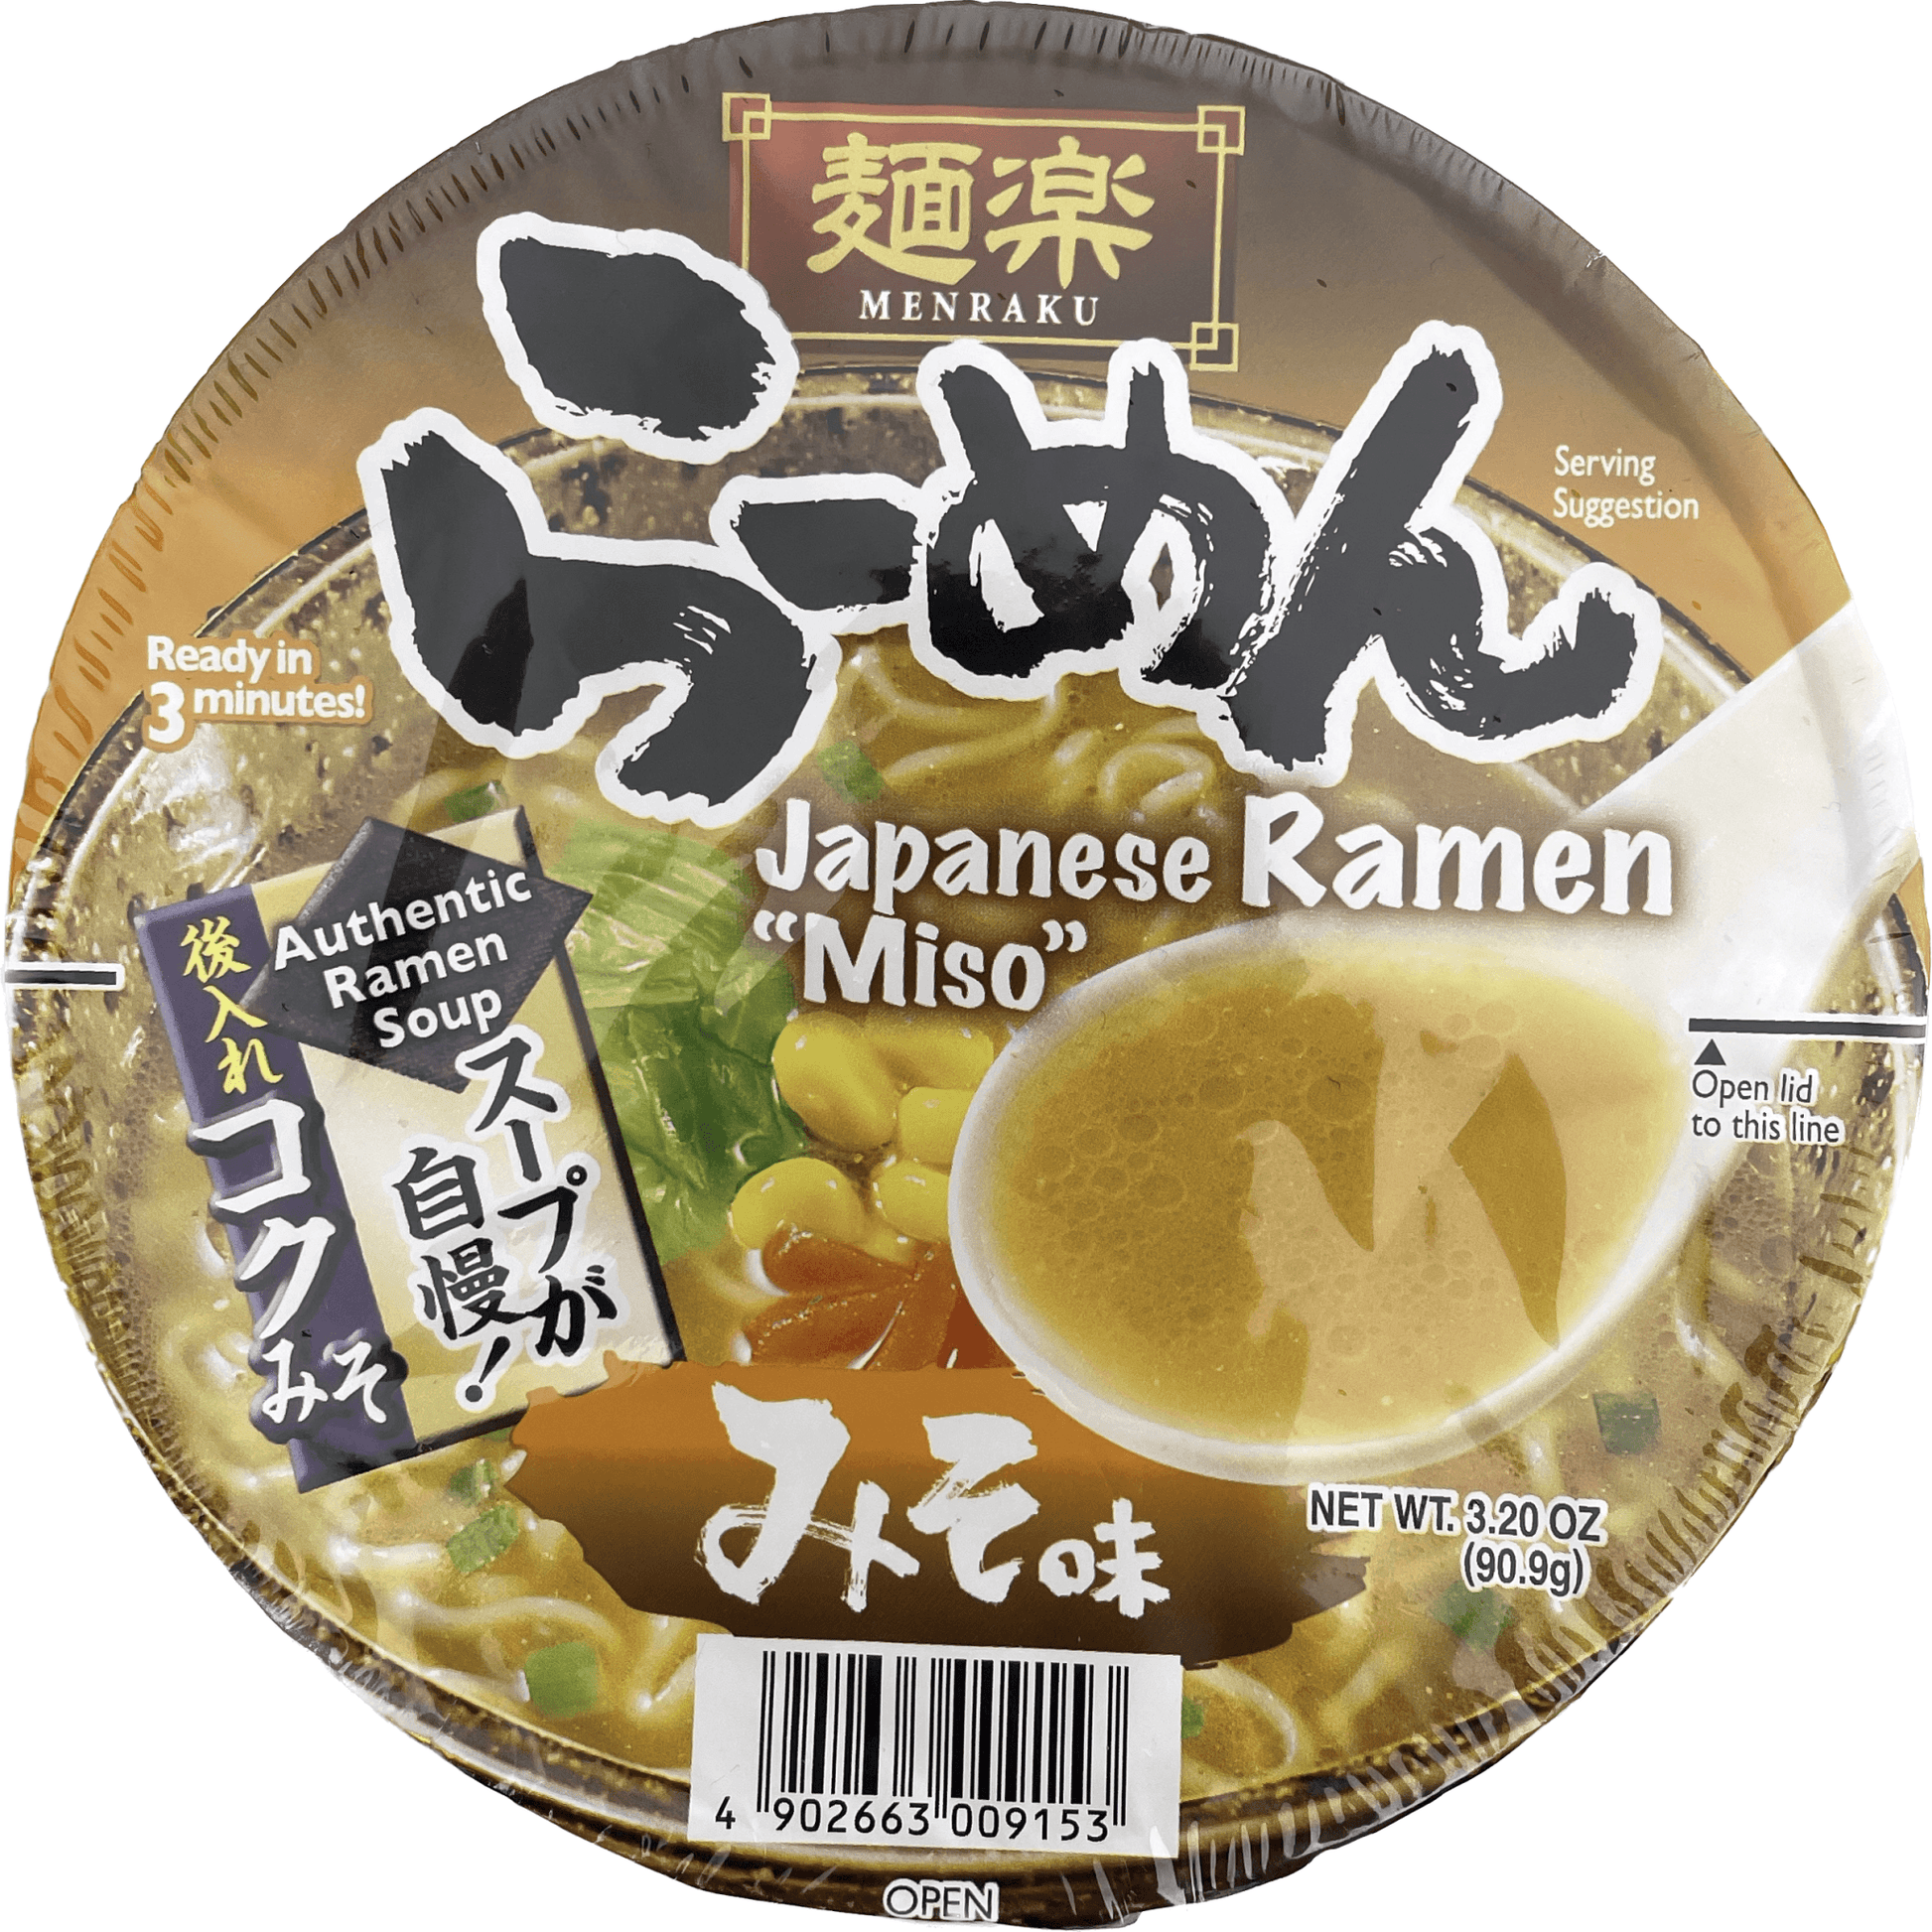 Hikari Menraku Japanese Ramen "Miso" / ひかり味噌 麺楽らーめん味噌 カップ - RiceWineShop